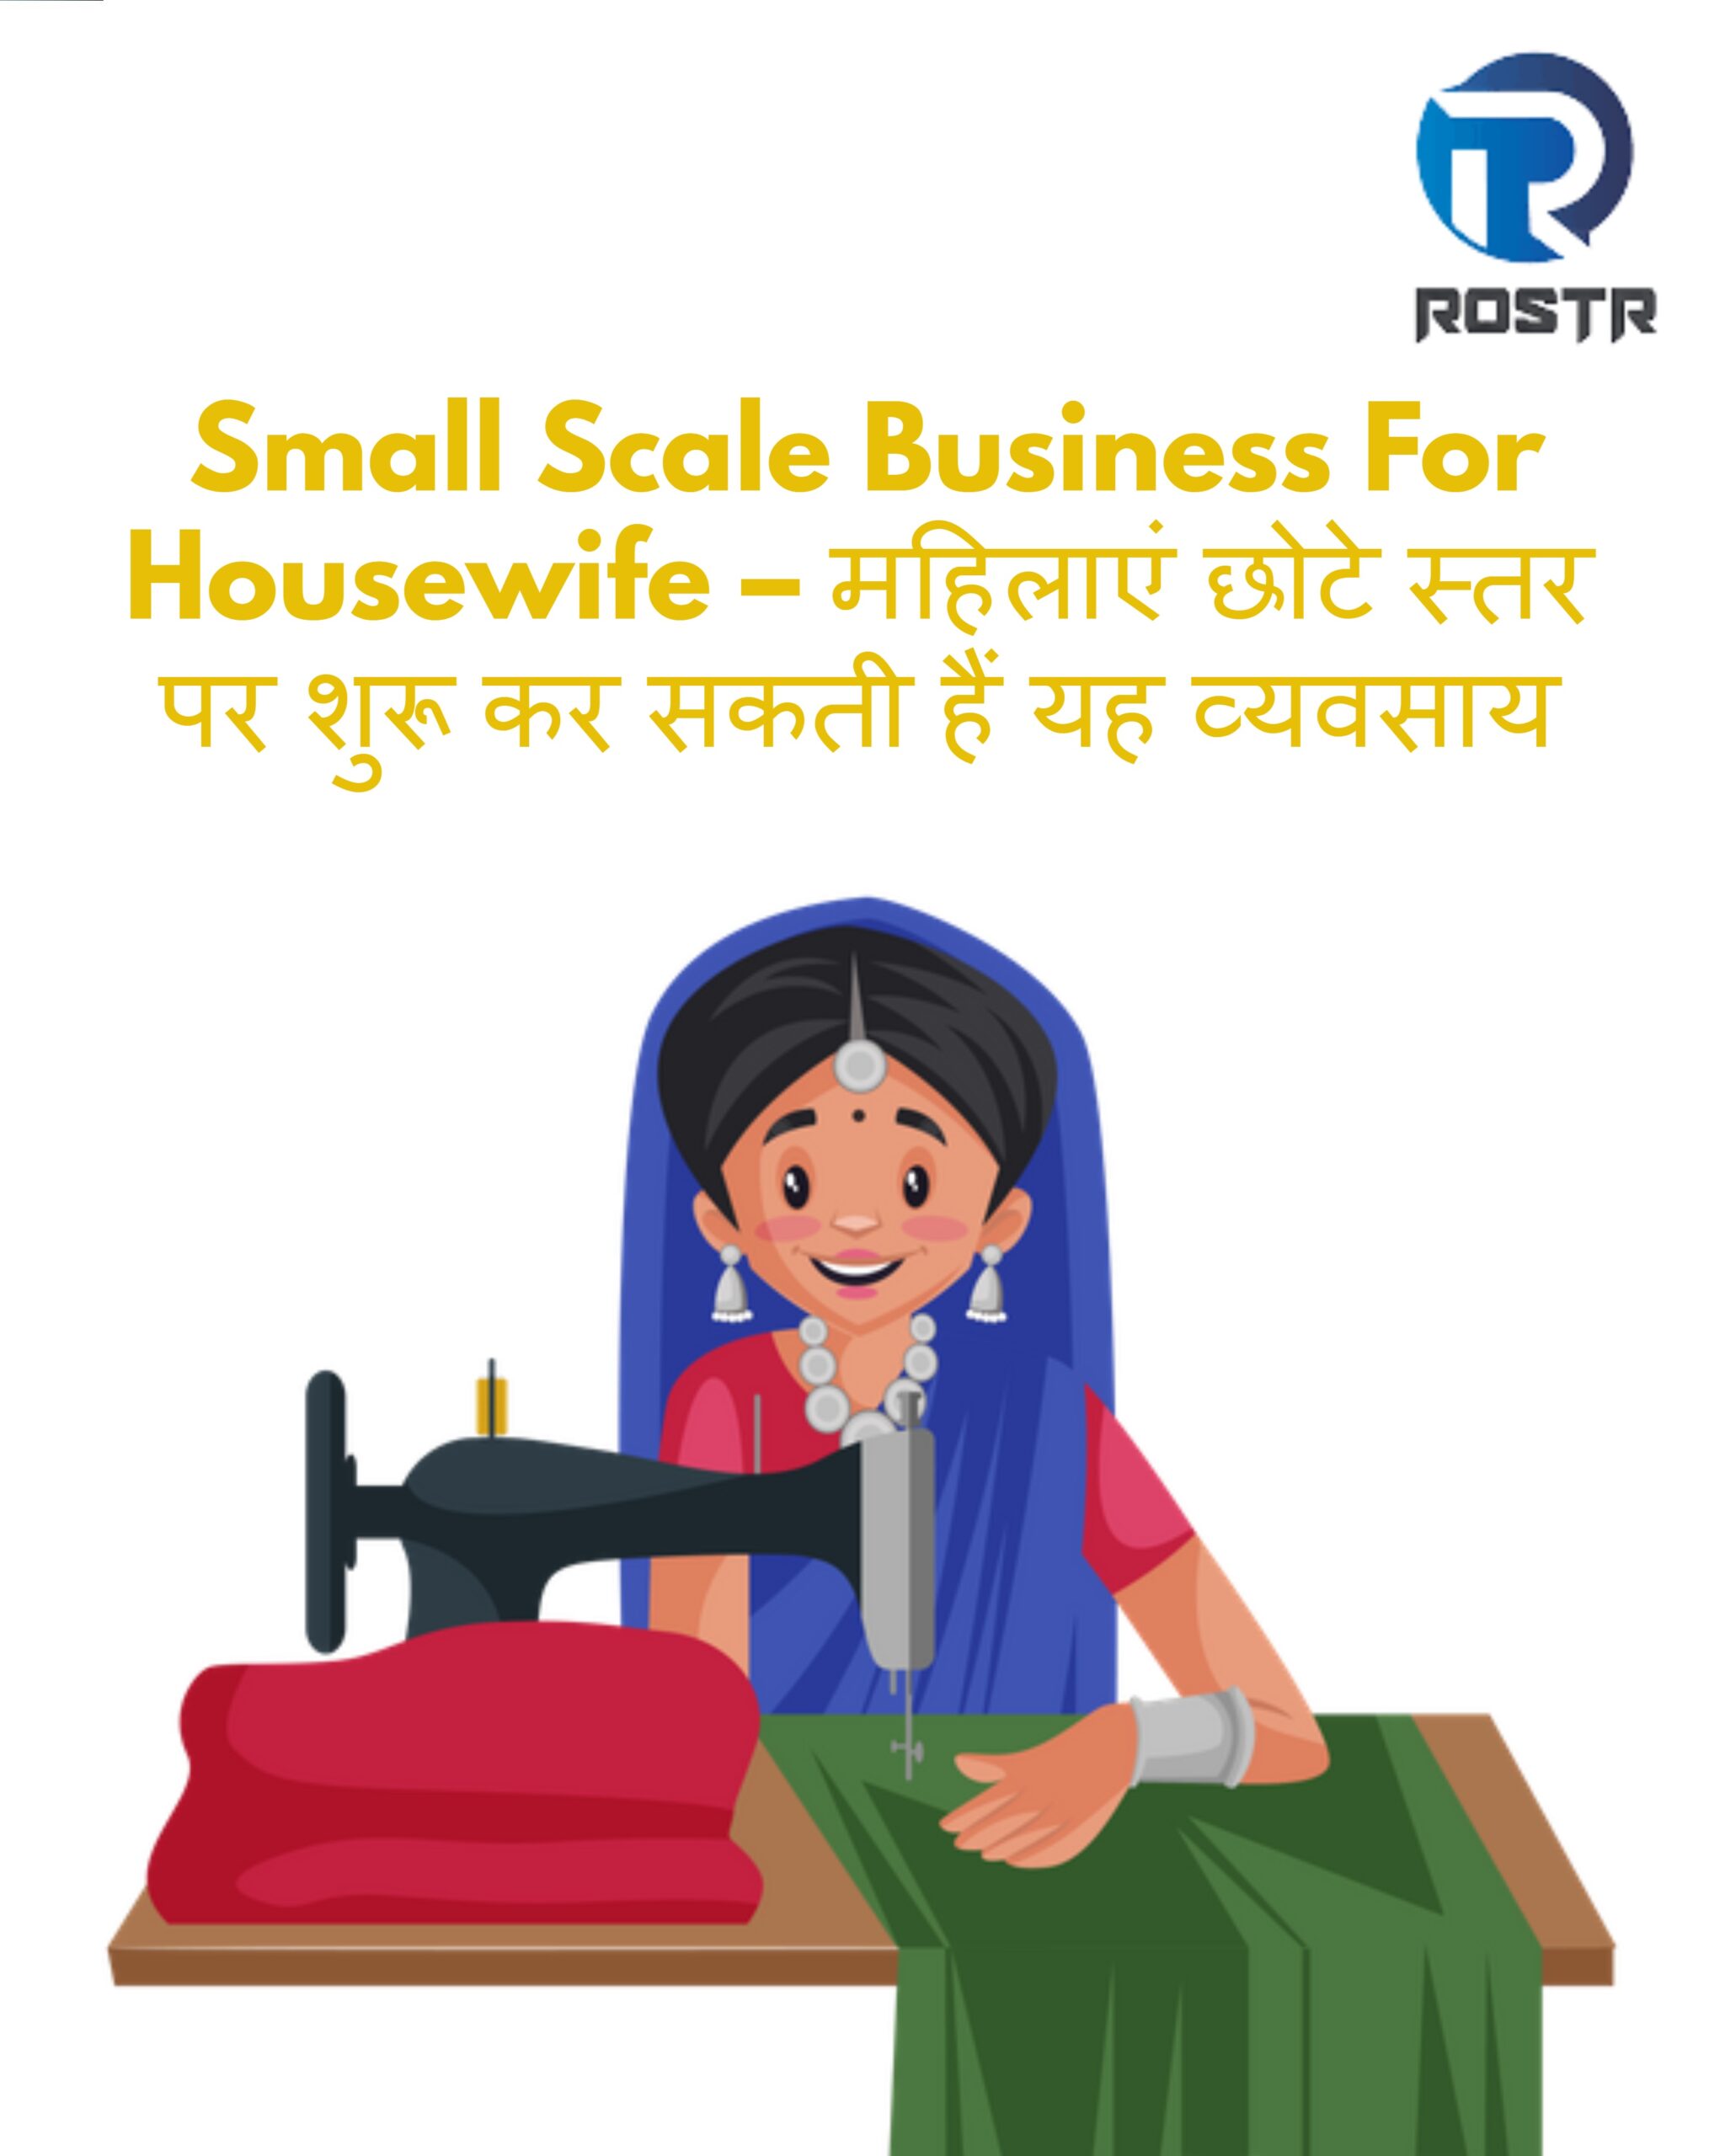 Small Scale Business For Housewife – महिलाएं छोटे स्तर पर शुरू कर सकती हैं यह व्यवसाय, होगी हजारों रुपए की कमाई !